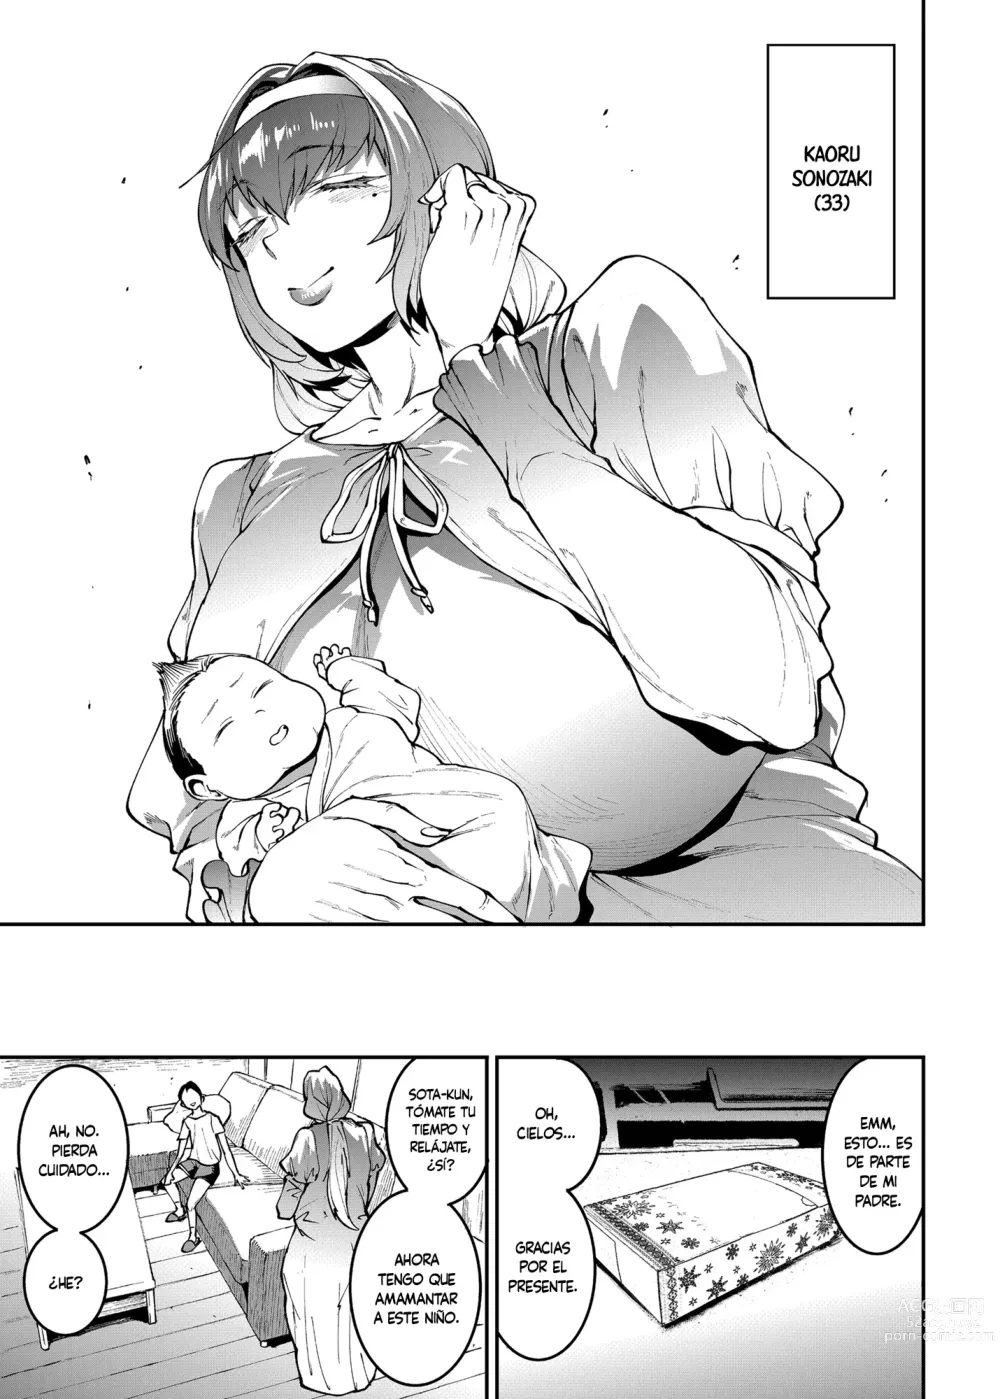 Page 5 of doujinshi El Condominio De Las Madres 〜Capítulo 2 Departamento #601 Kaoru Sonozaki (36)〜